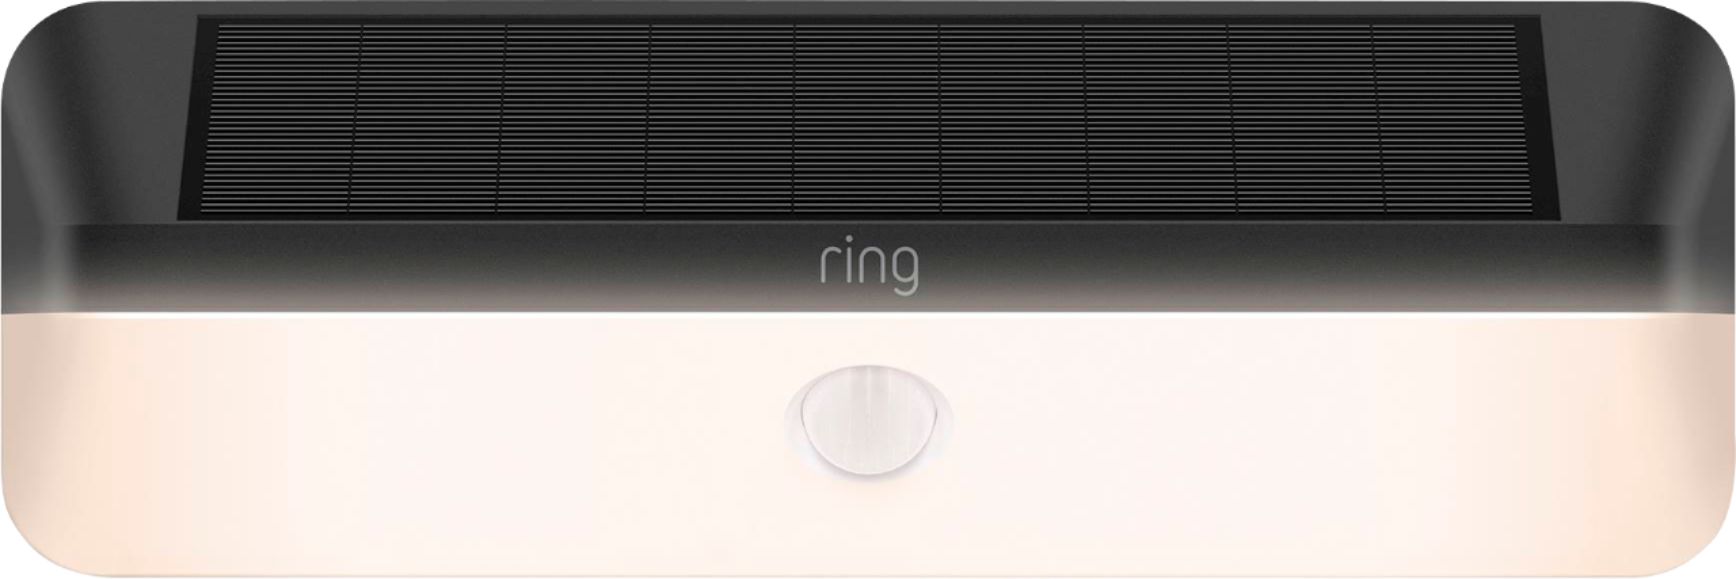 Ring - Smart Solar Wall Light - Black